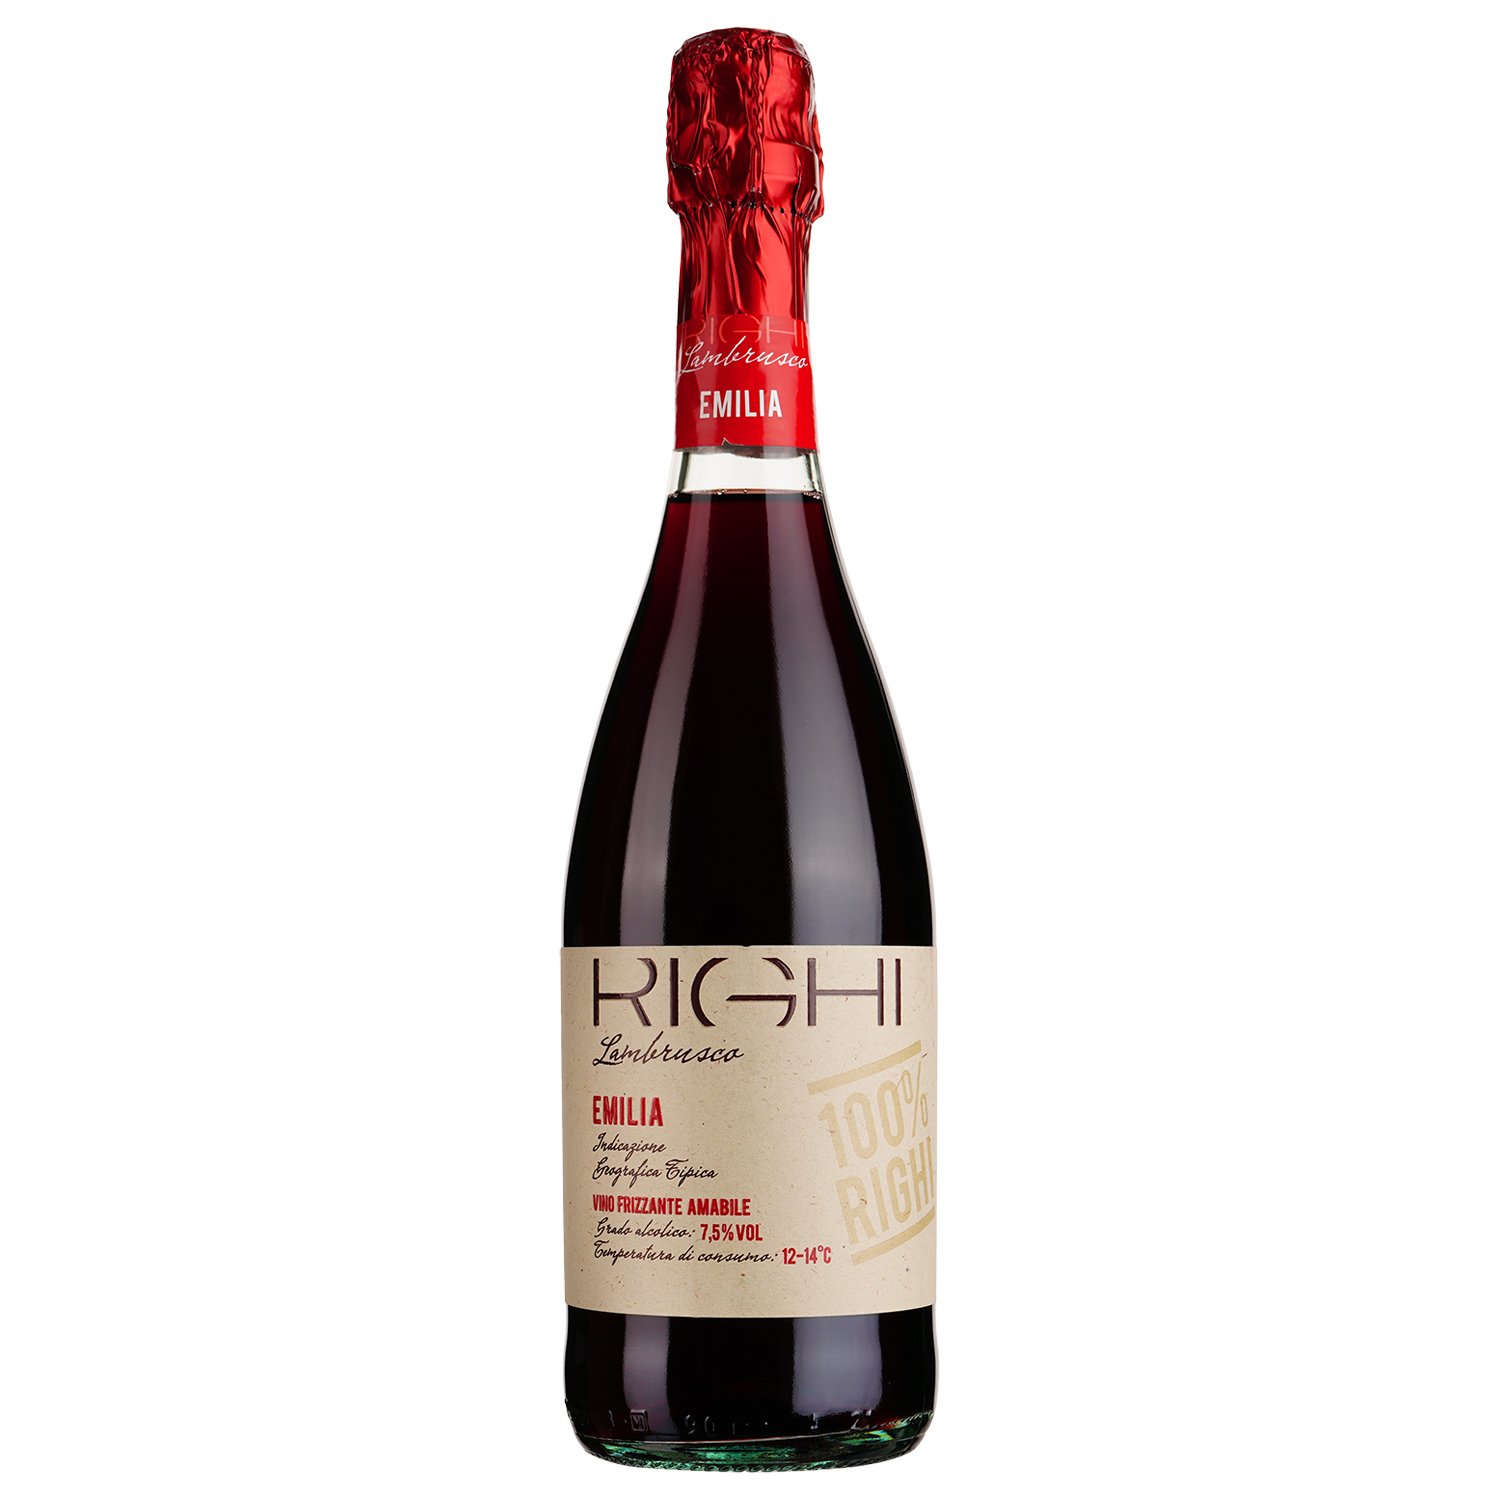 Игристое вино Righi Lambrusco Emilia IGT, красное, полусладкое, 7,5%, 0,75 л - фото 1